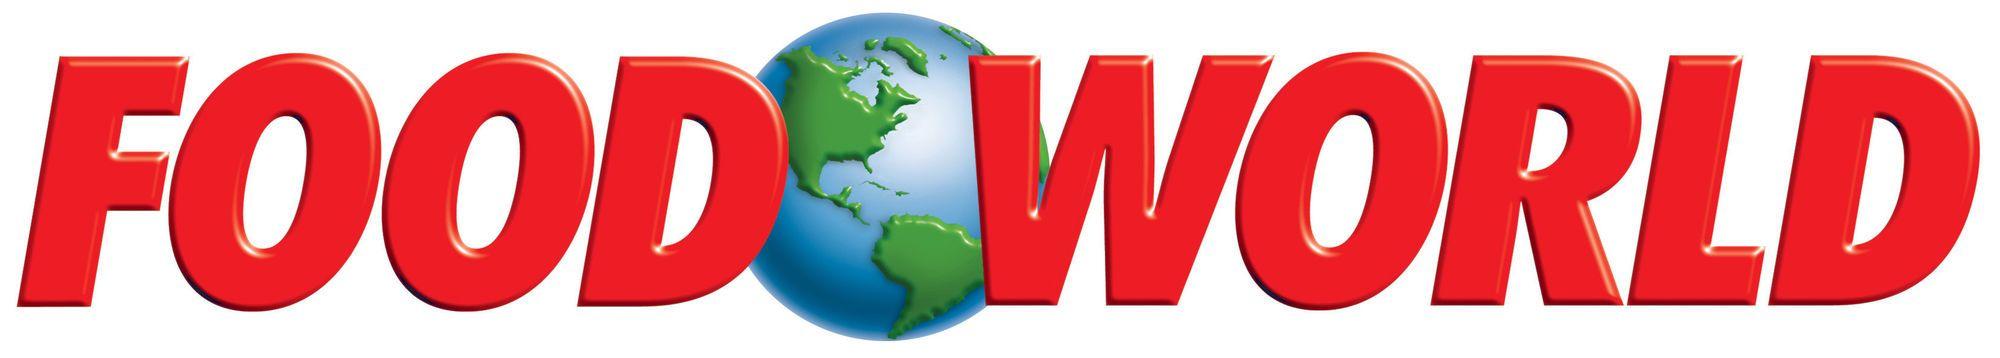 Food World Logo - Food World